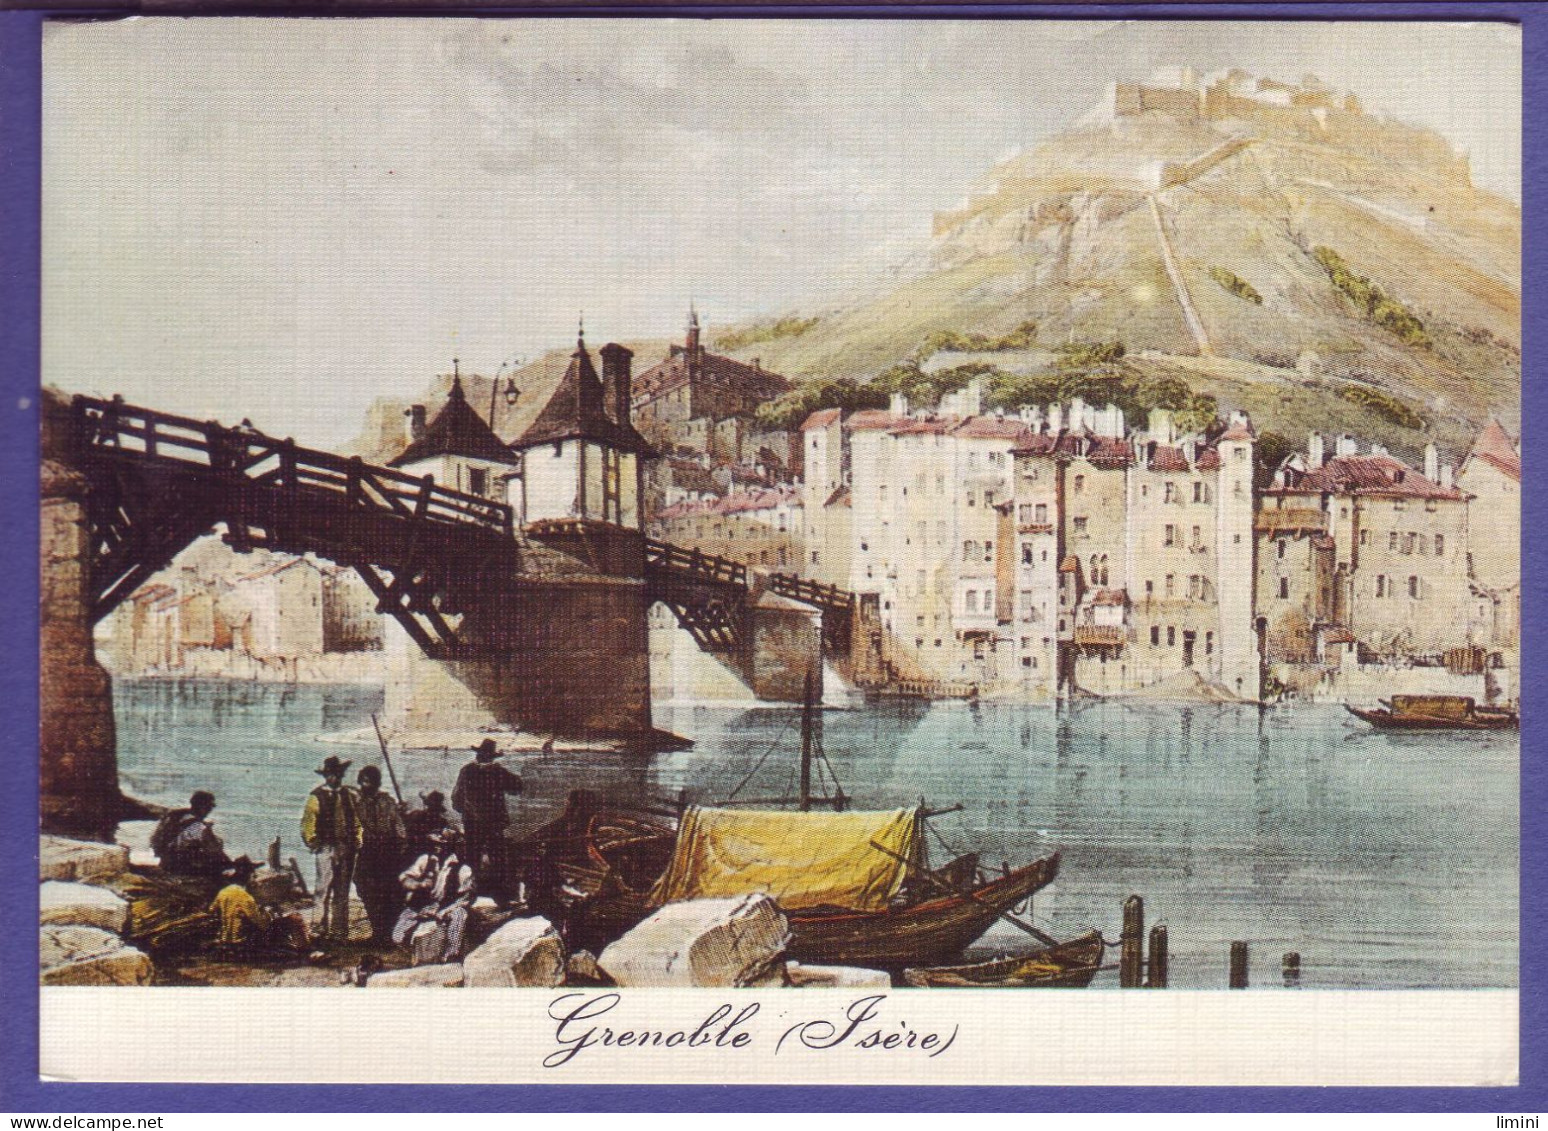 38 - GRENOBLE - CARTE ILLUSTRÉE - VIEUX PONT EN BOIS EN 1830 - ANIMÉE -  - Grenoble